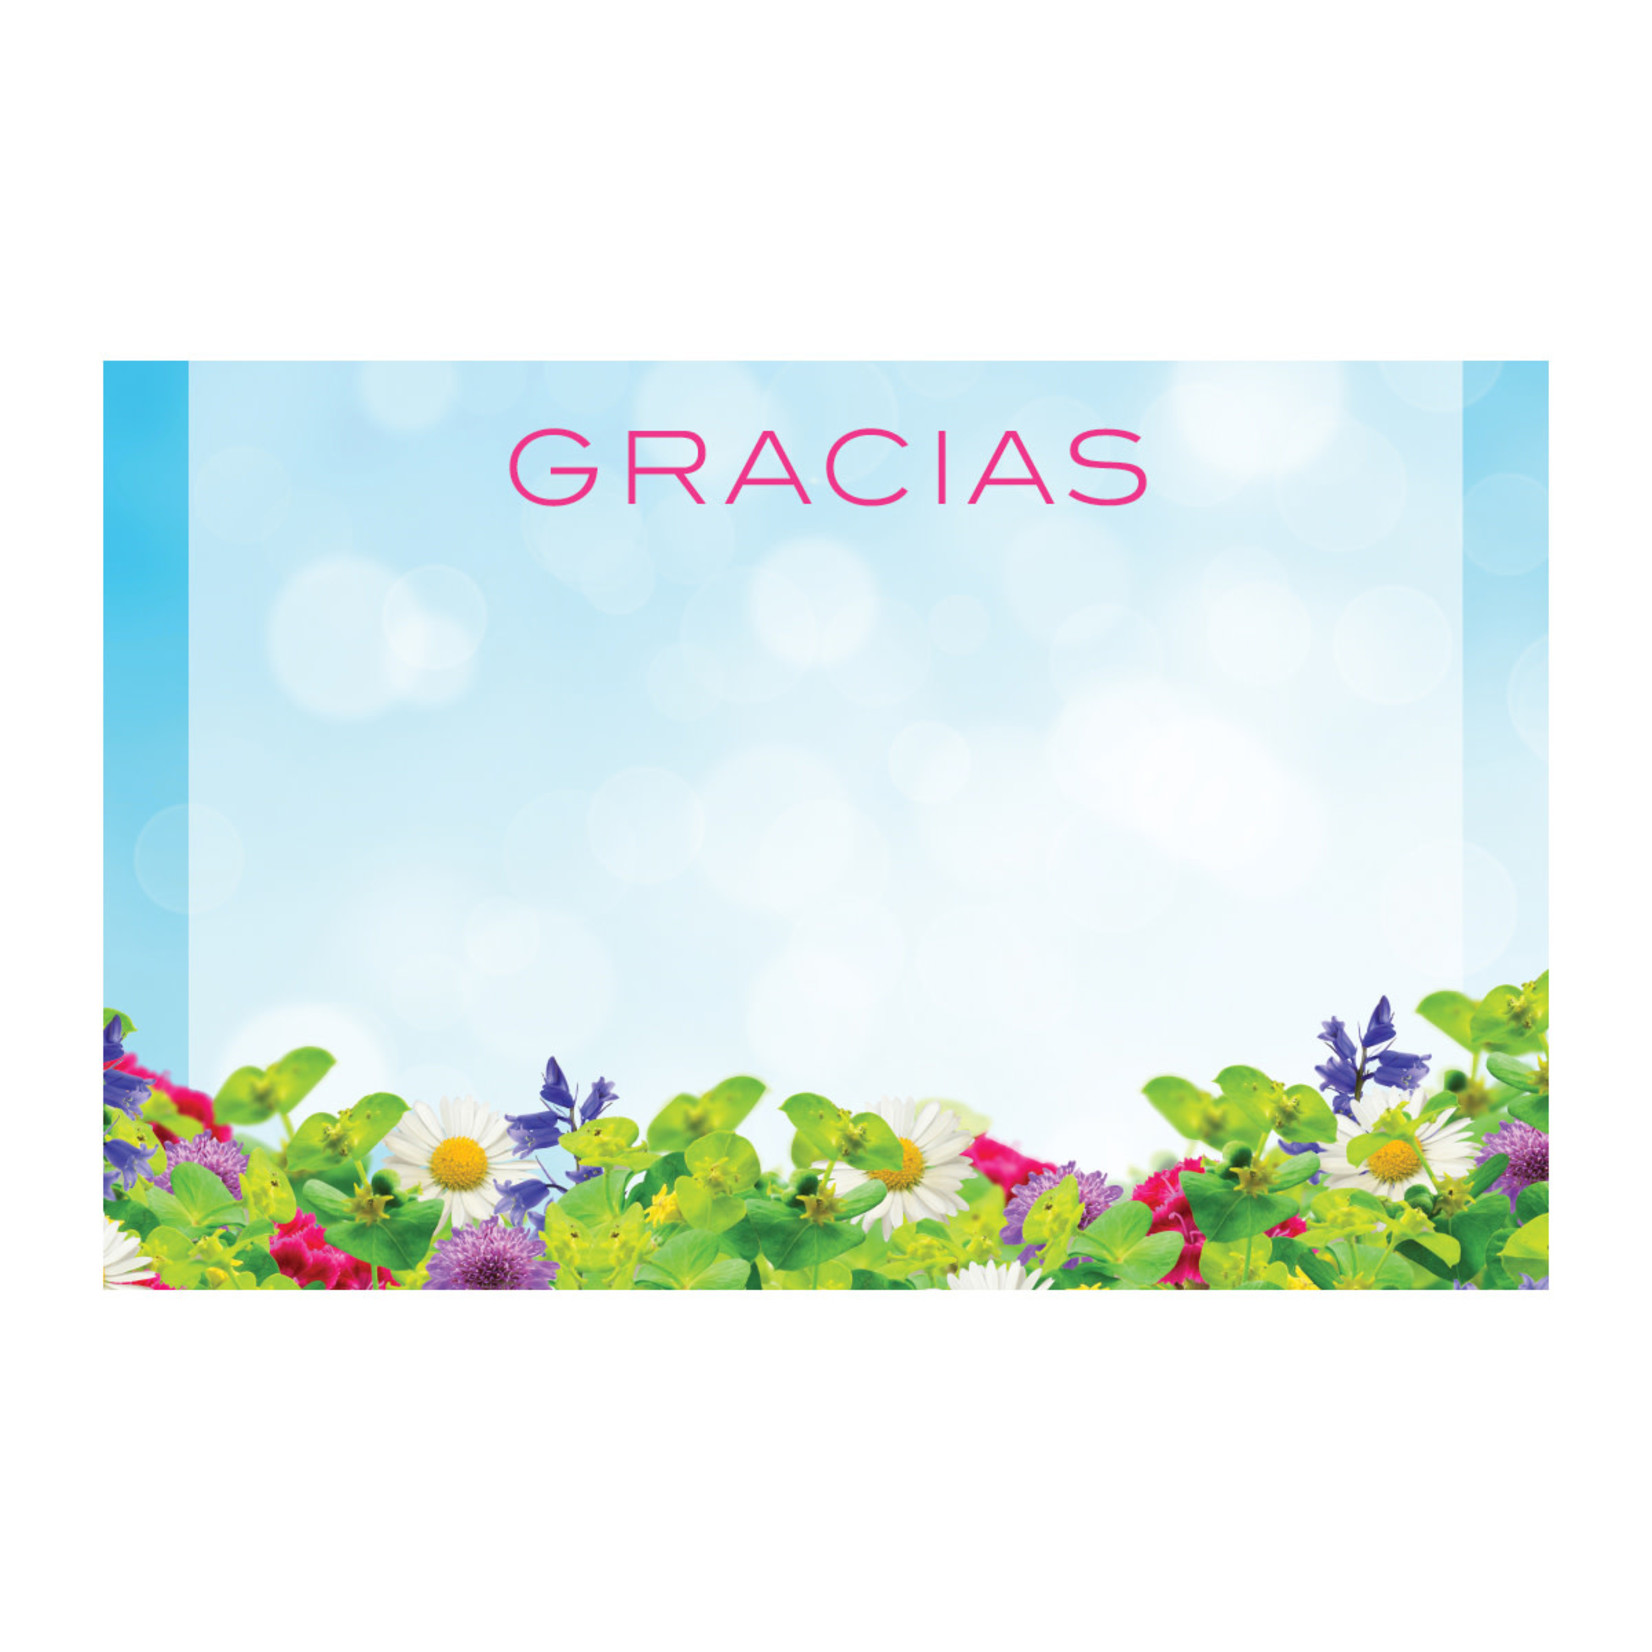 “GRACIAS” CAPRI CARD